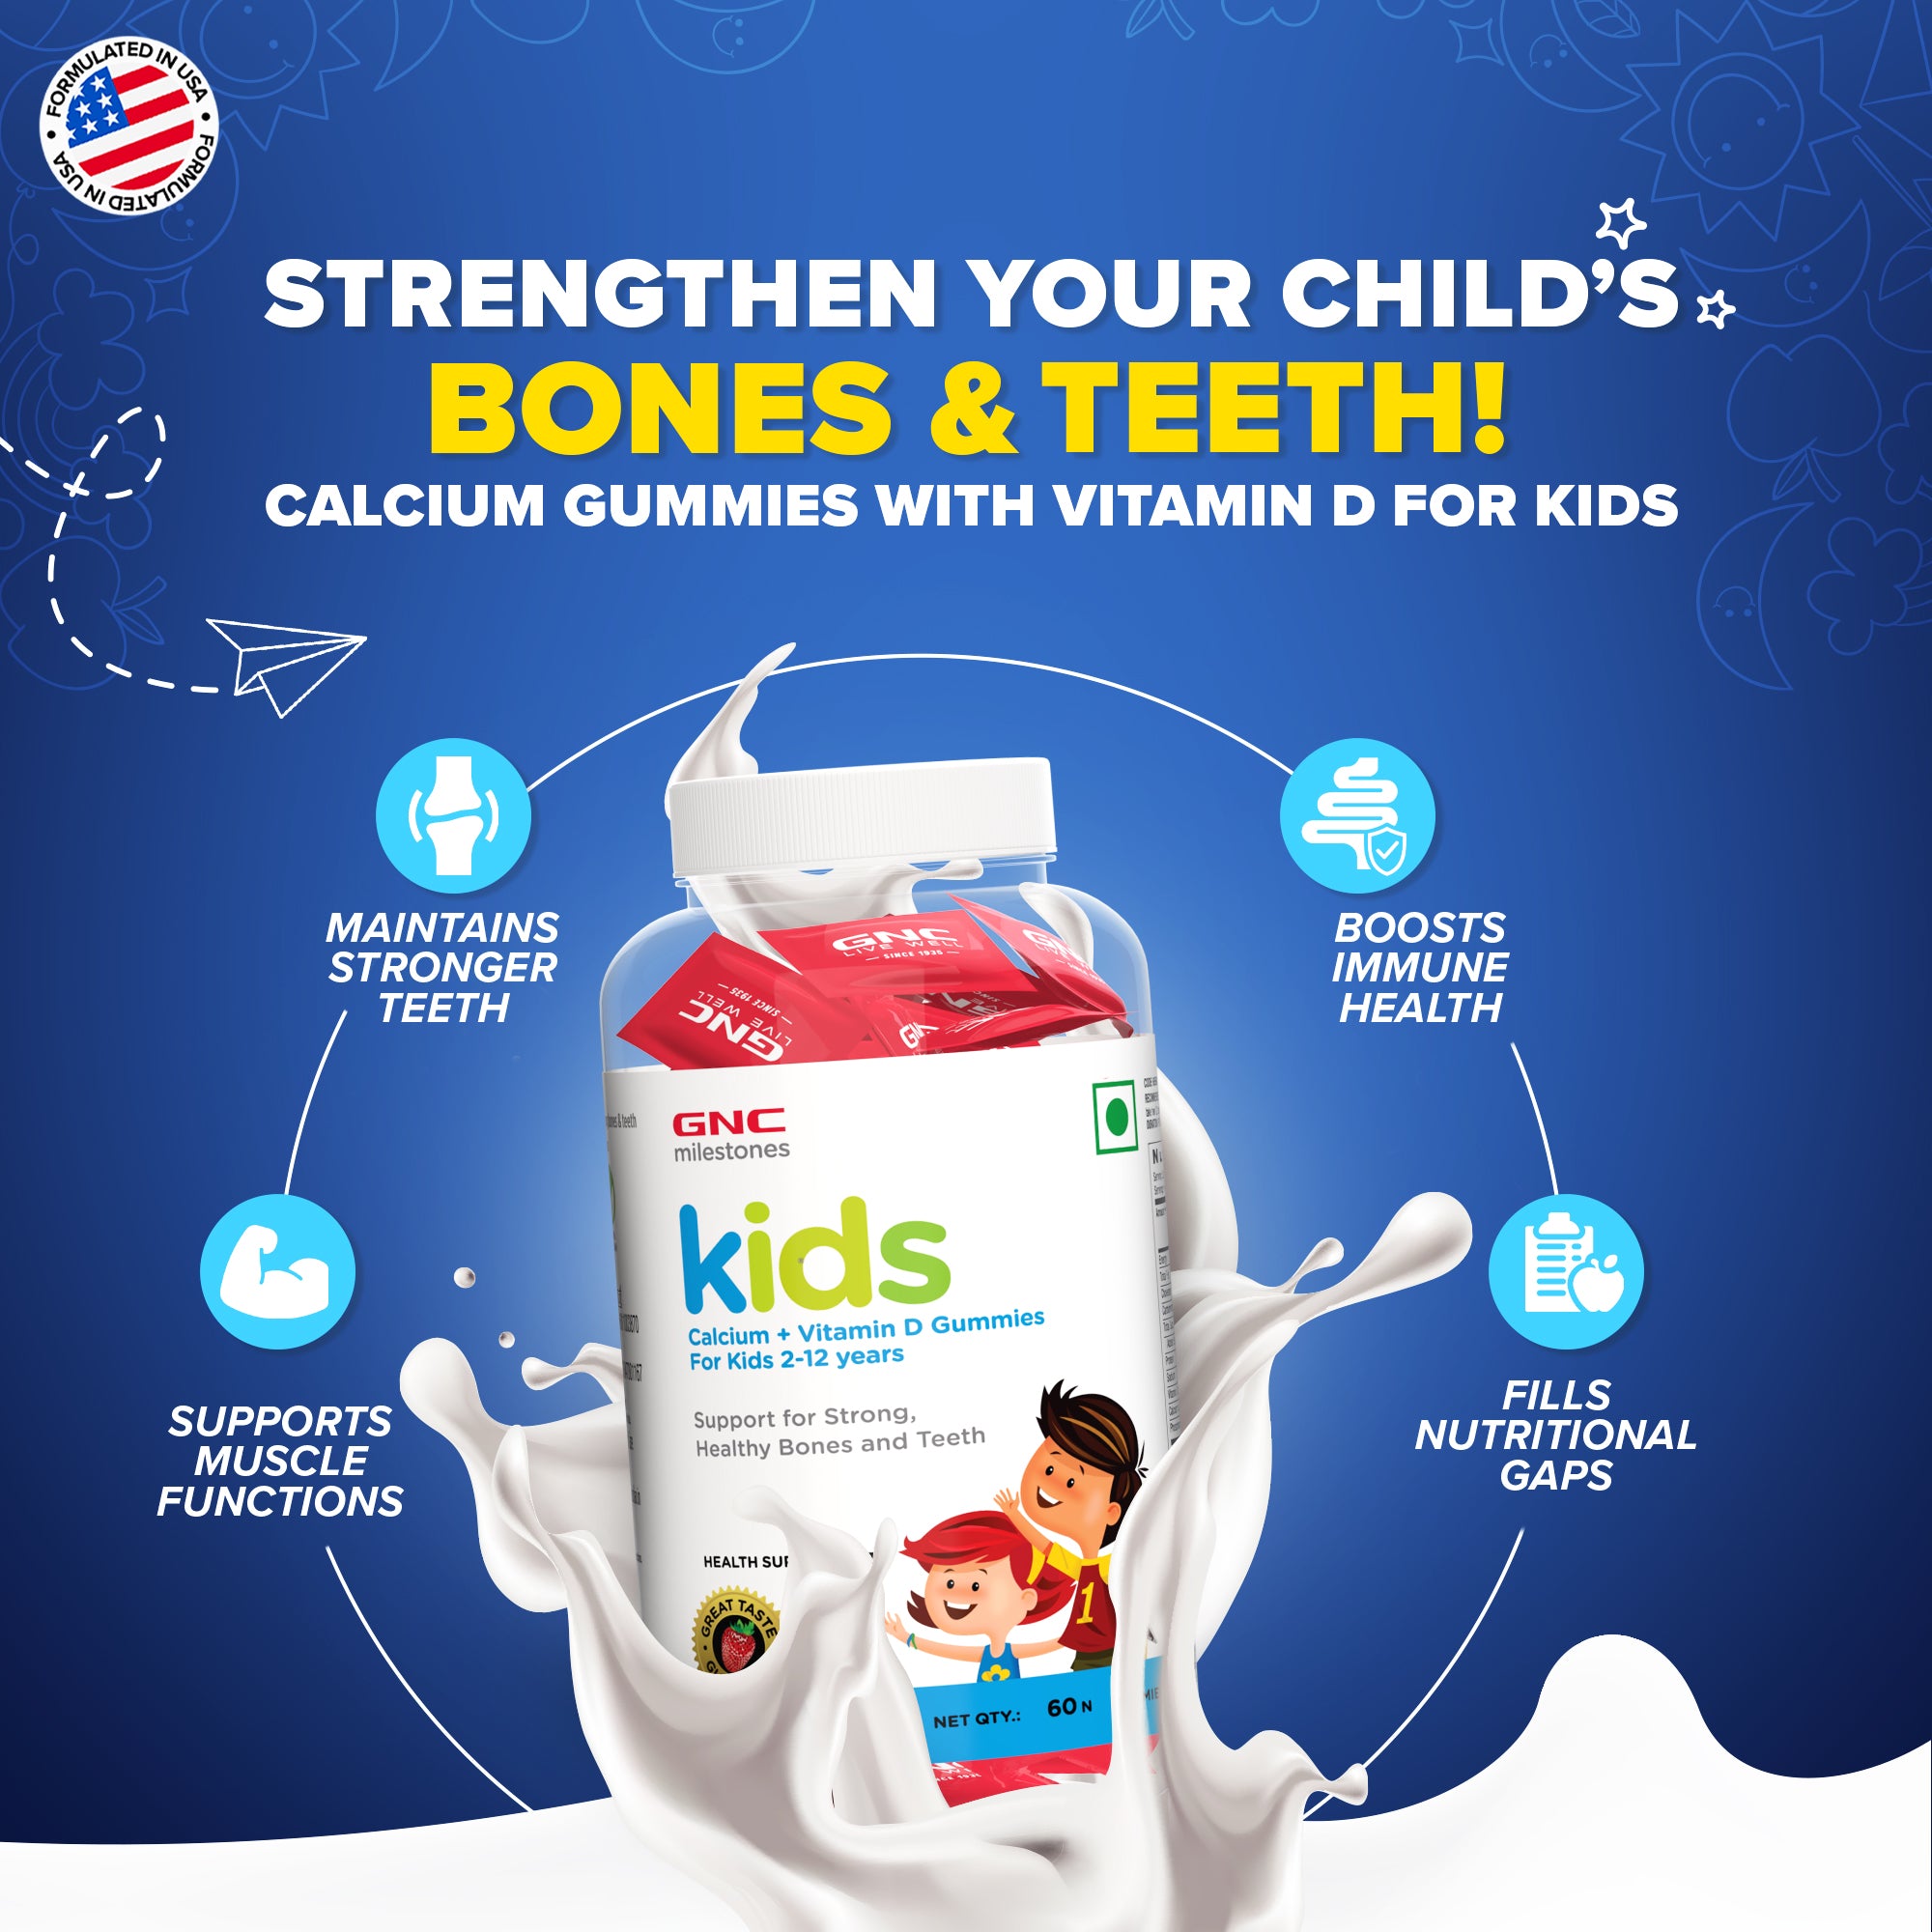 GNC milestones kids Calcium + Vitamin D Gummies - For Healthy Bones & Teeth In 2-12Y Kids